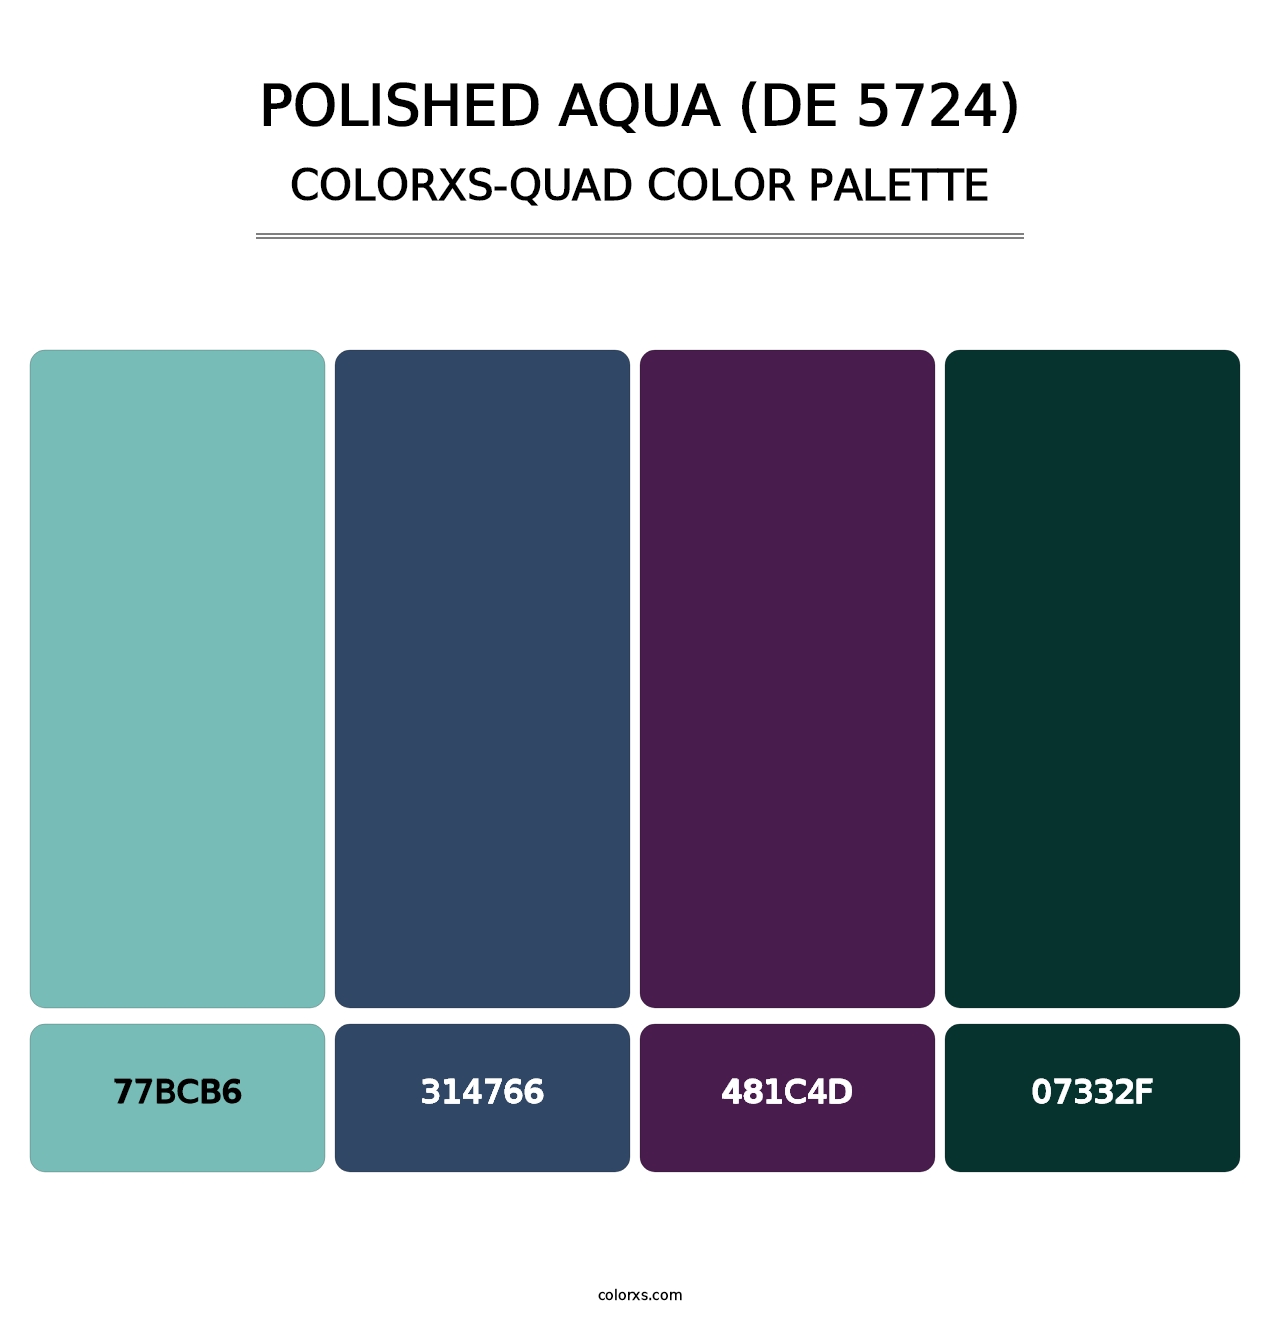 Polished Aqua (DE 5724) - Colorxs Quad Palette